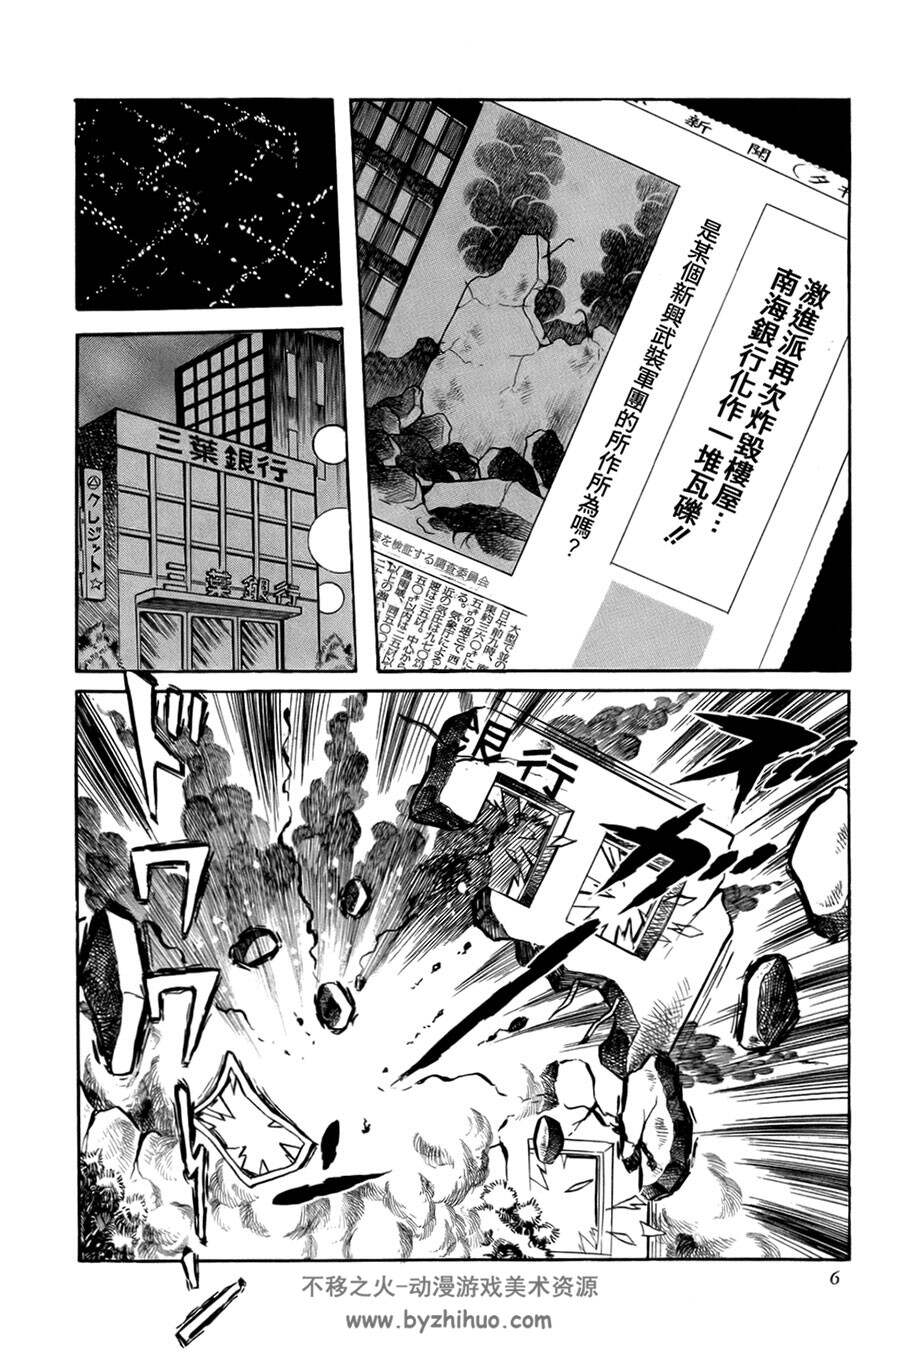 盖塔机器人SAGA元祖盖塔盖塔g漫画 1-2卷+G 百度网盘下载